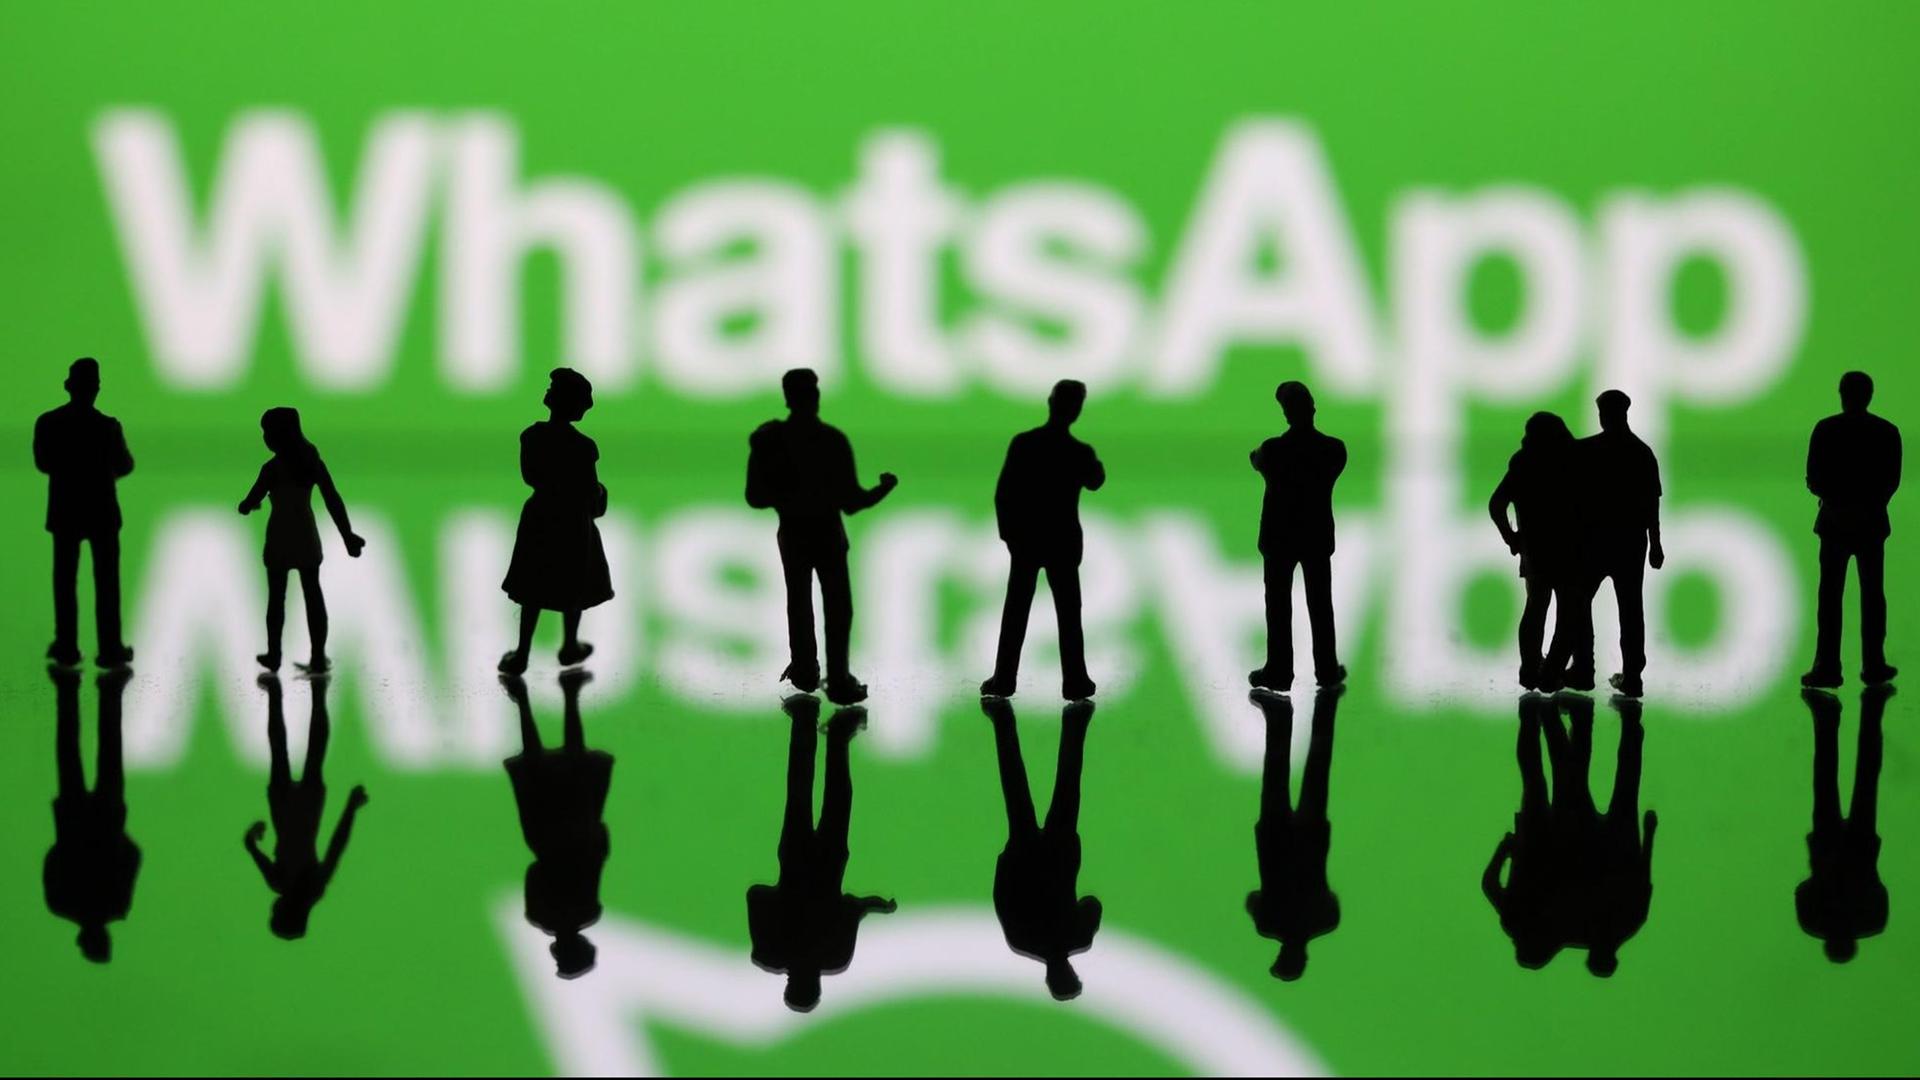 Illustration zum Messengerdienst WhatsApp: Vor dem Schriftzug "WhatsApp" stehen Menschen.